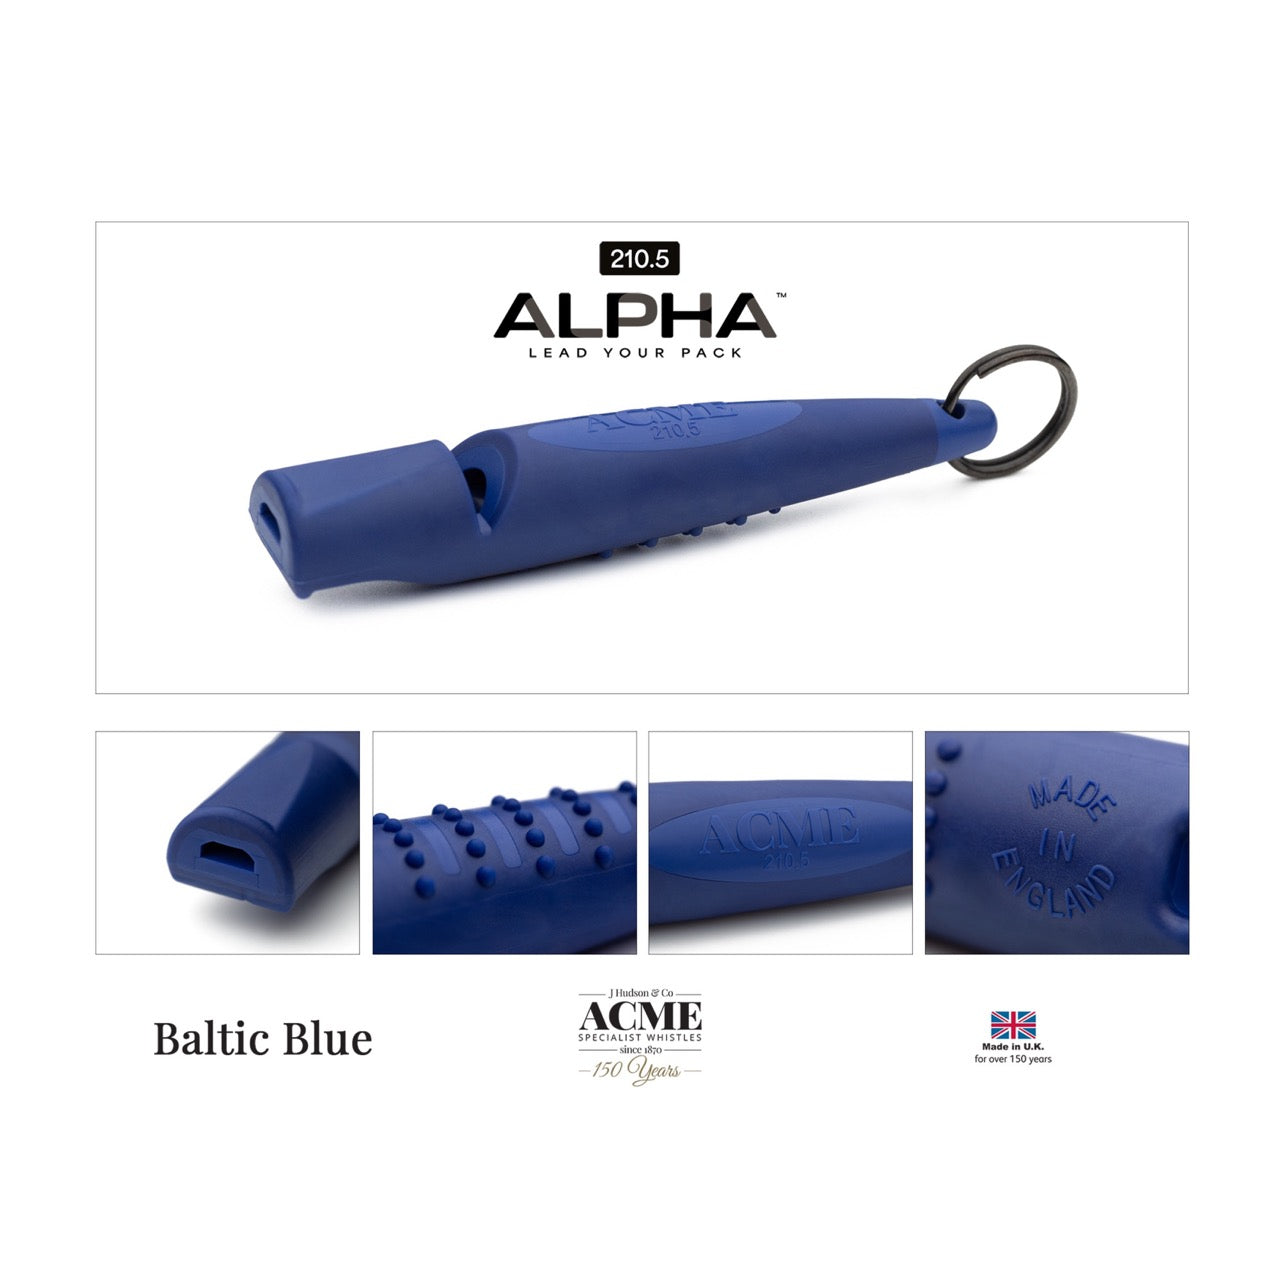 Acme Alpha beste hondenfluit toonhoogte 210.5 baltic blue